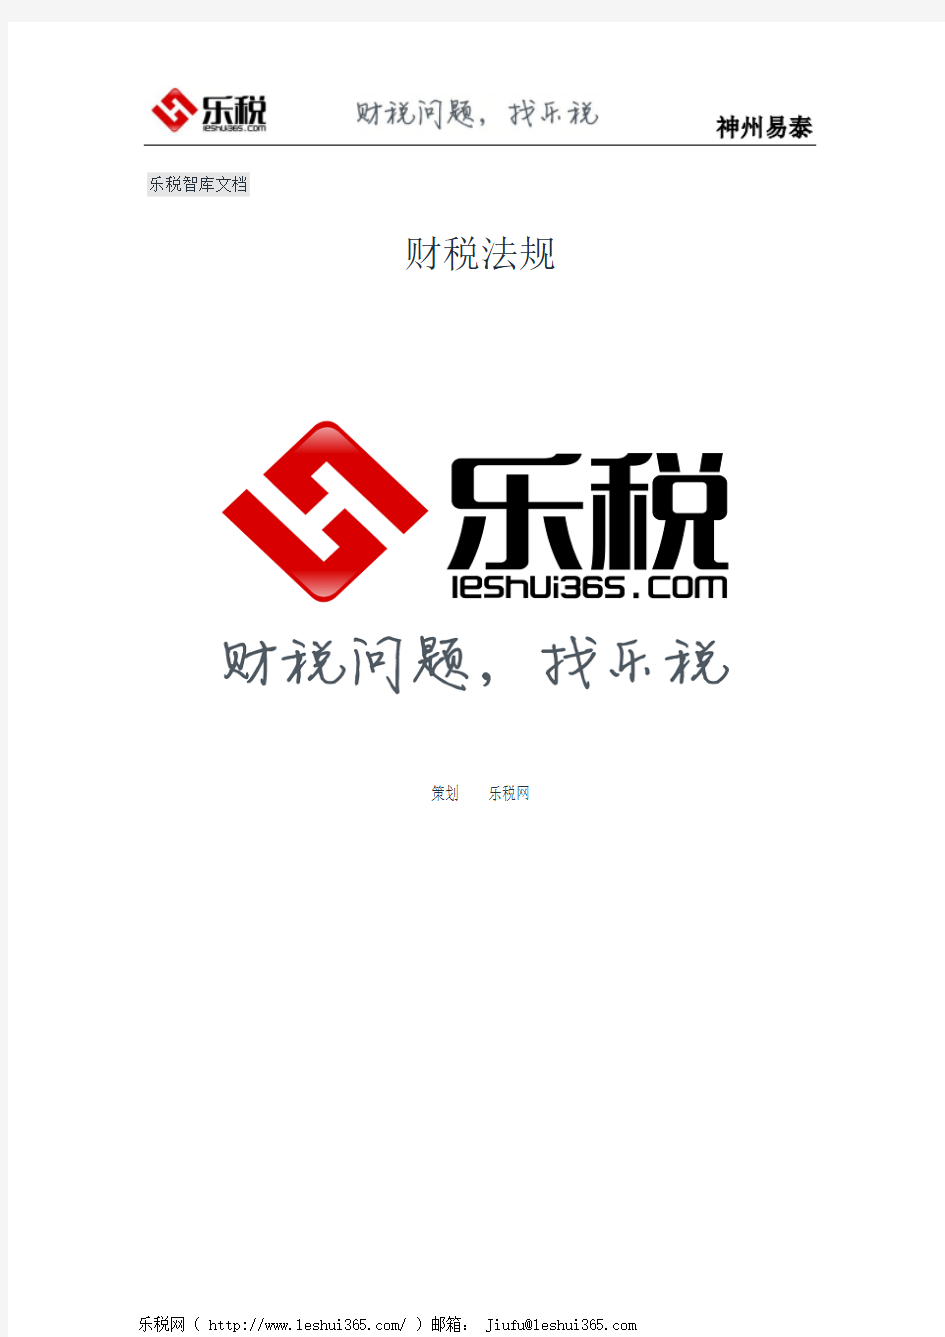 上海市国家税务局上海市地方税务局关于公布废止或失效的税收规范